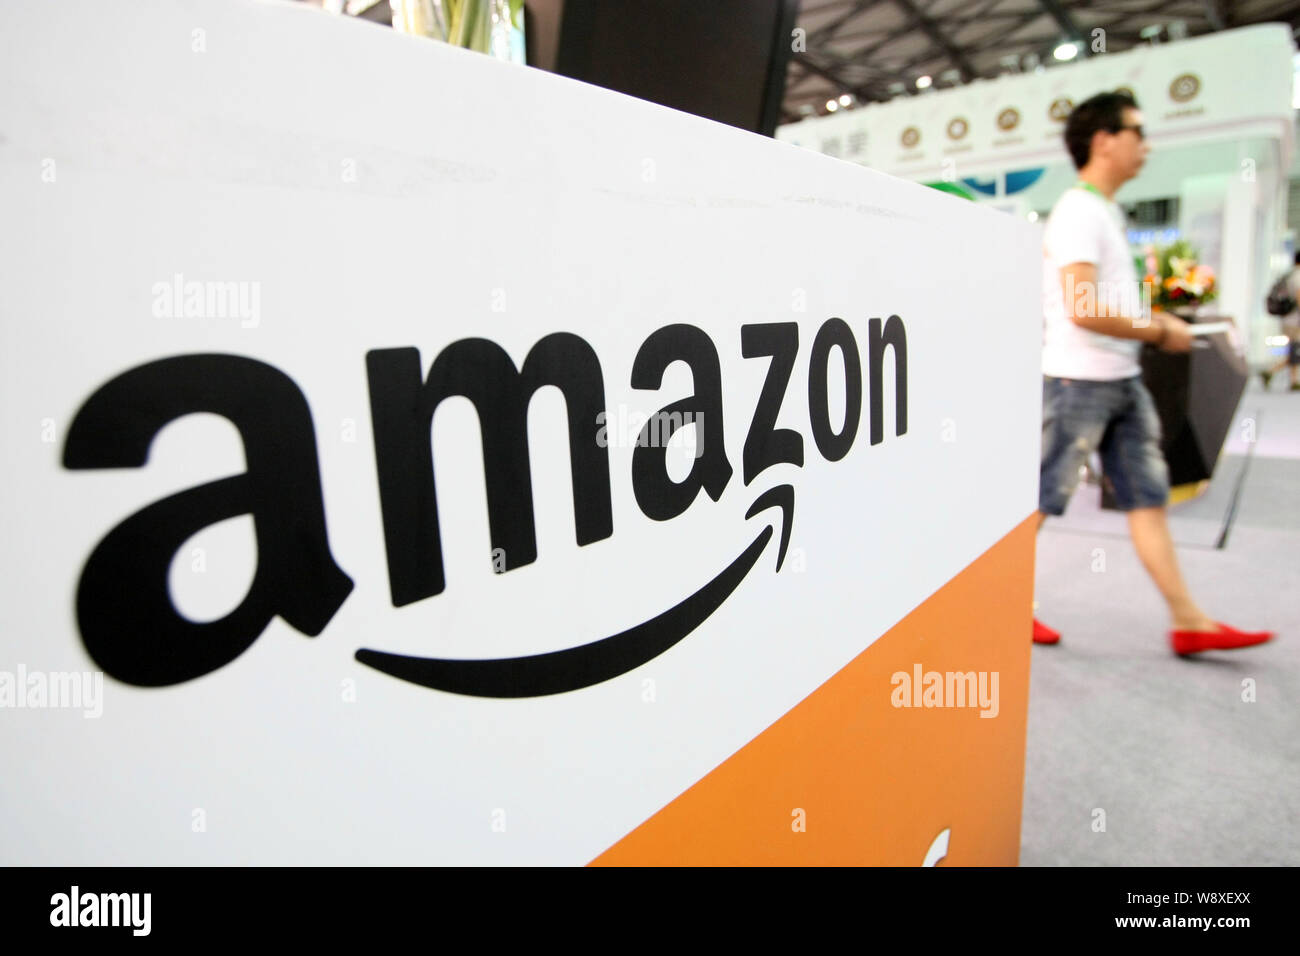 ---- Ein Besucher Spaziergänge über den Stand des e-commerce Riese Amazon während einer Ausstellung in Shanghai, China, 31. Juli 2014. Amazon sagt es unterzeichnet hat d Stockfoto